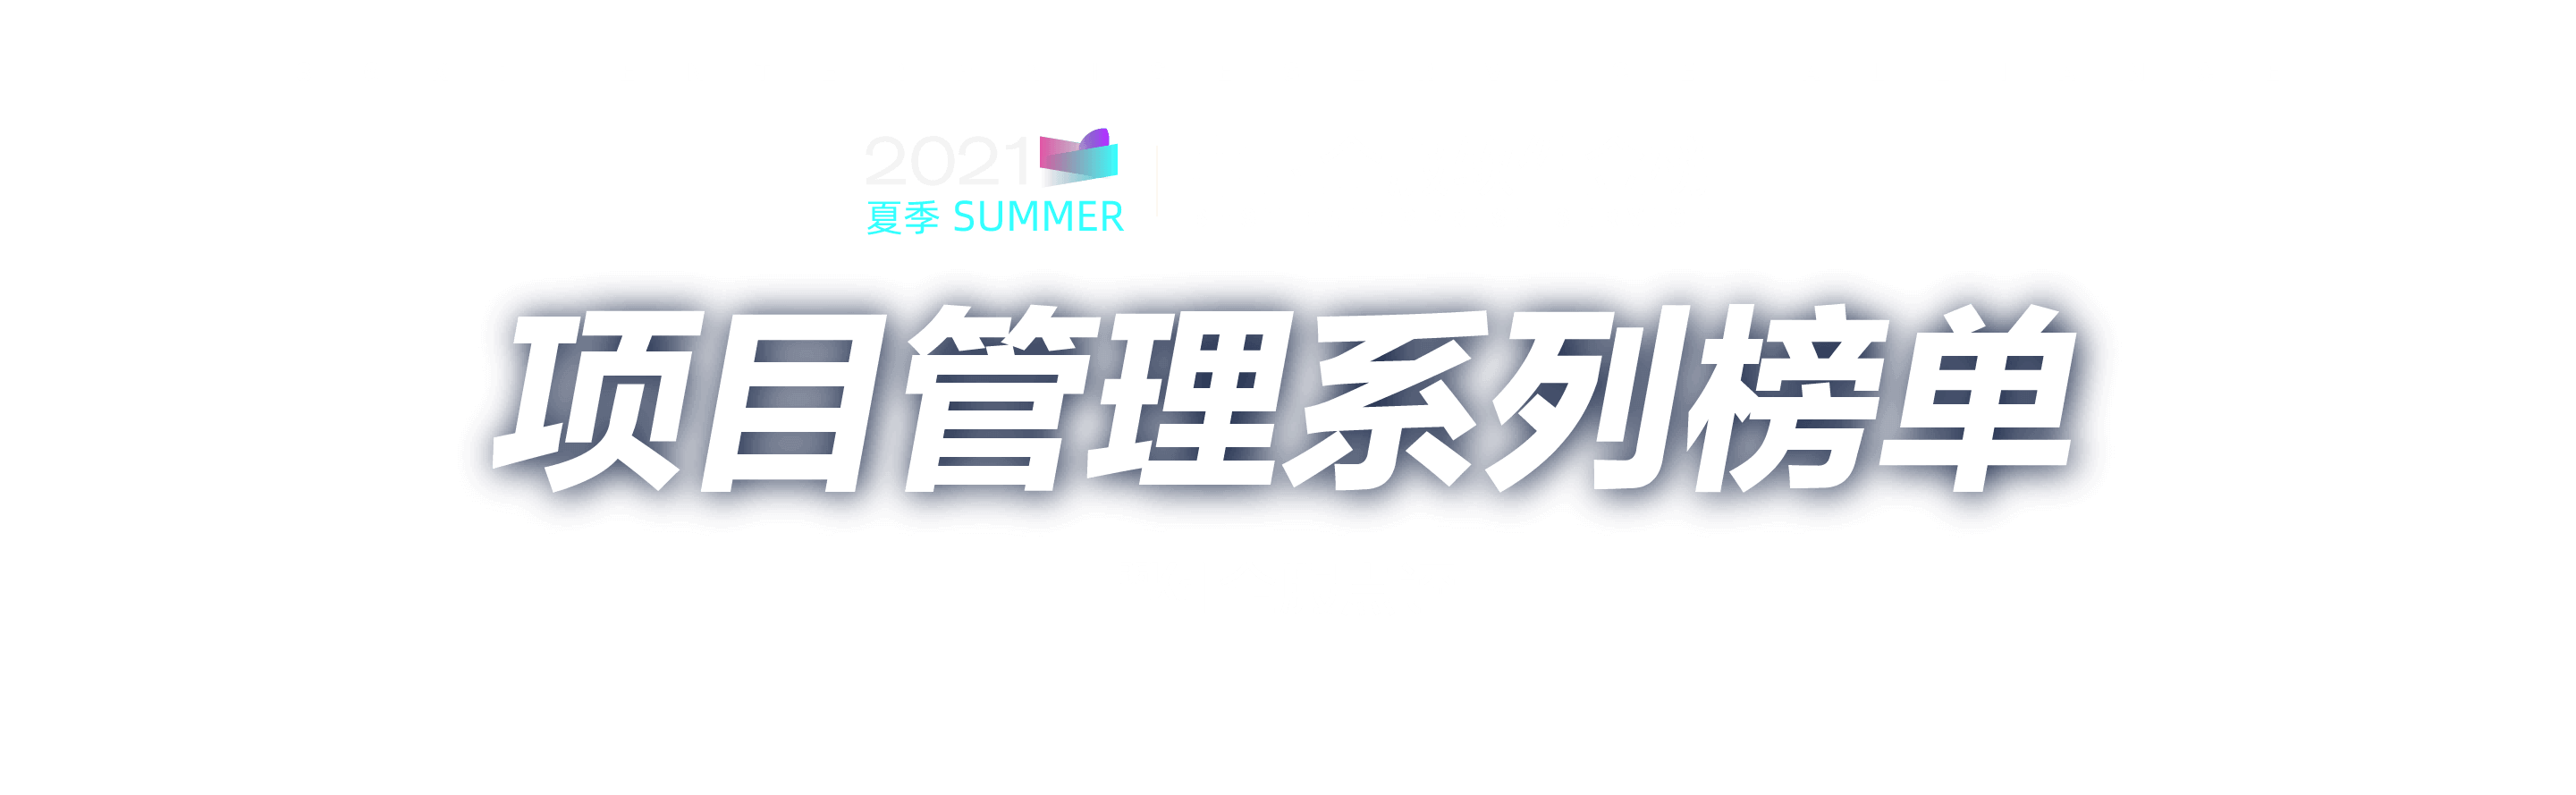 「项目管理系列榜单」2021夏季 · 中国企服软件金榜